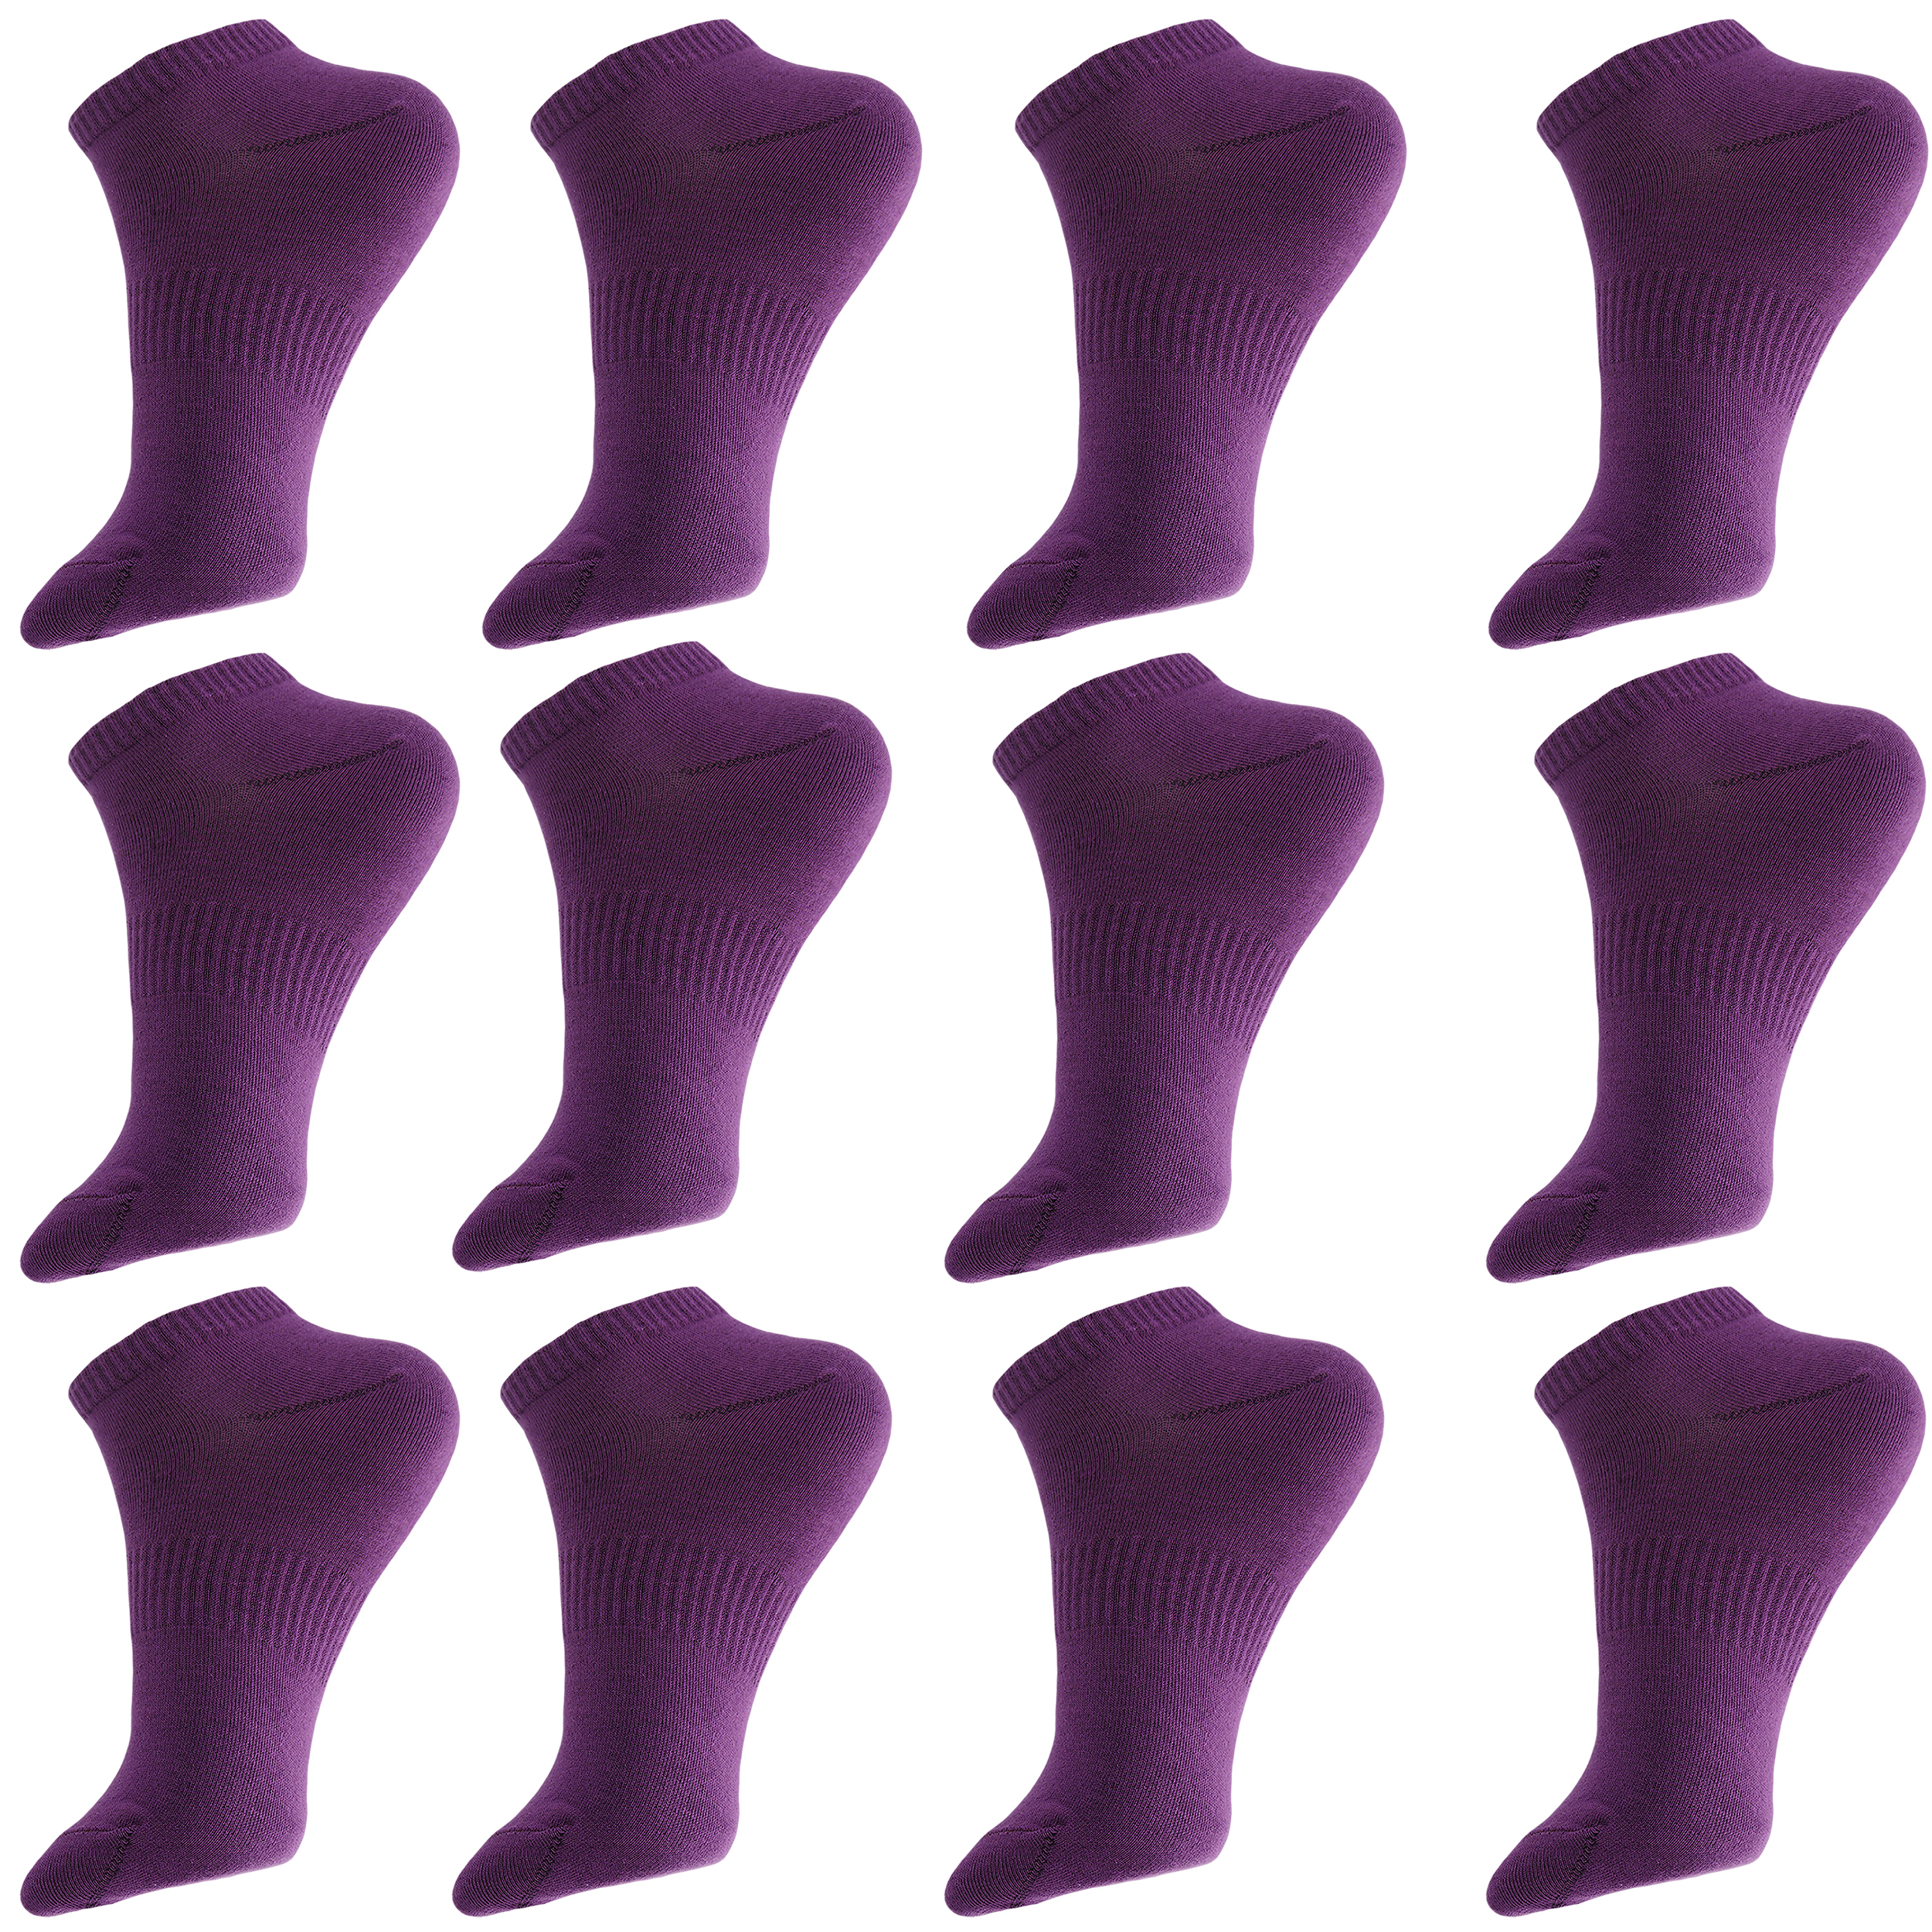 جوراب ورزشی ساق کوتاه مردانه ادیب مدل اسپرت کش انگلیسی کد MNSPT رنگ بنفش بسته 12 عددی